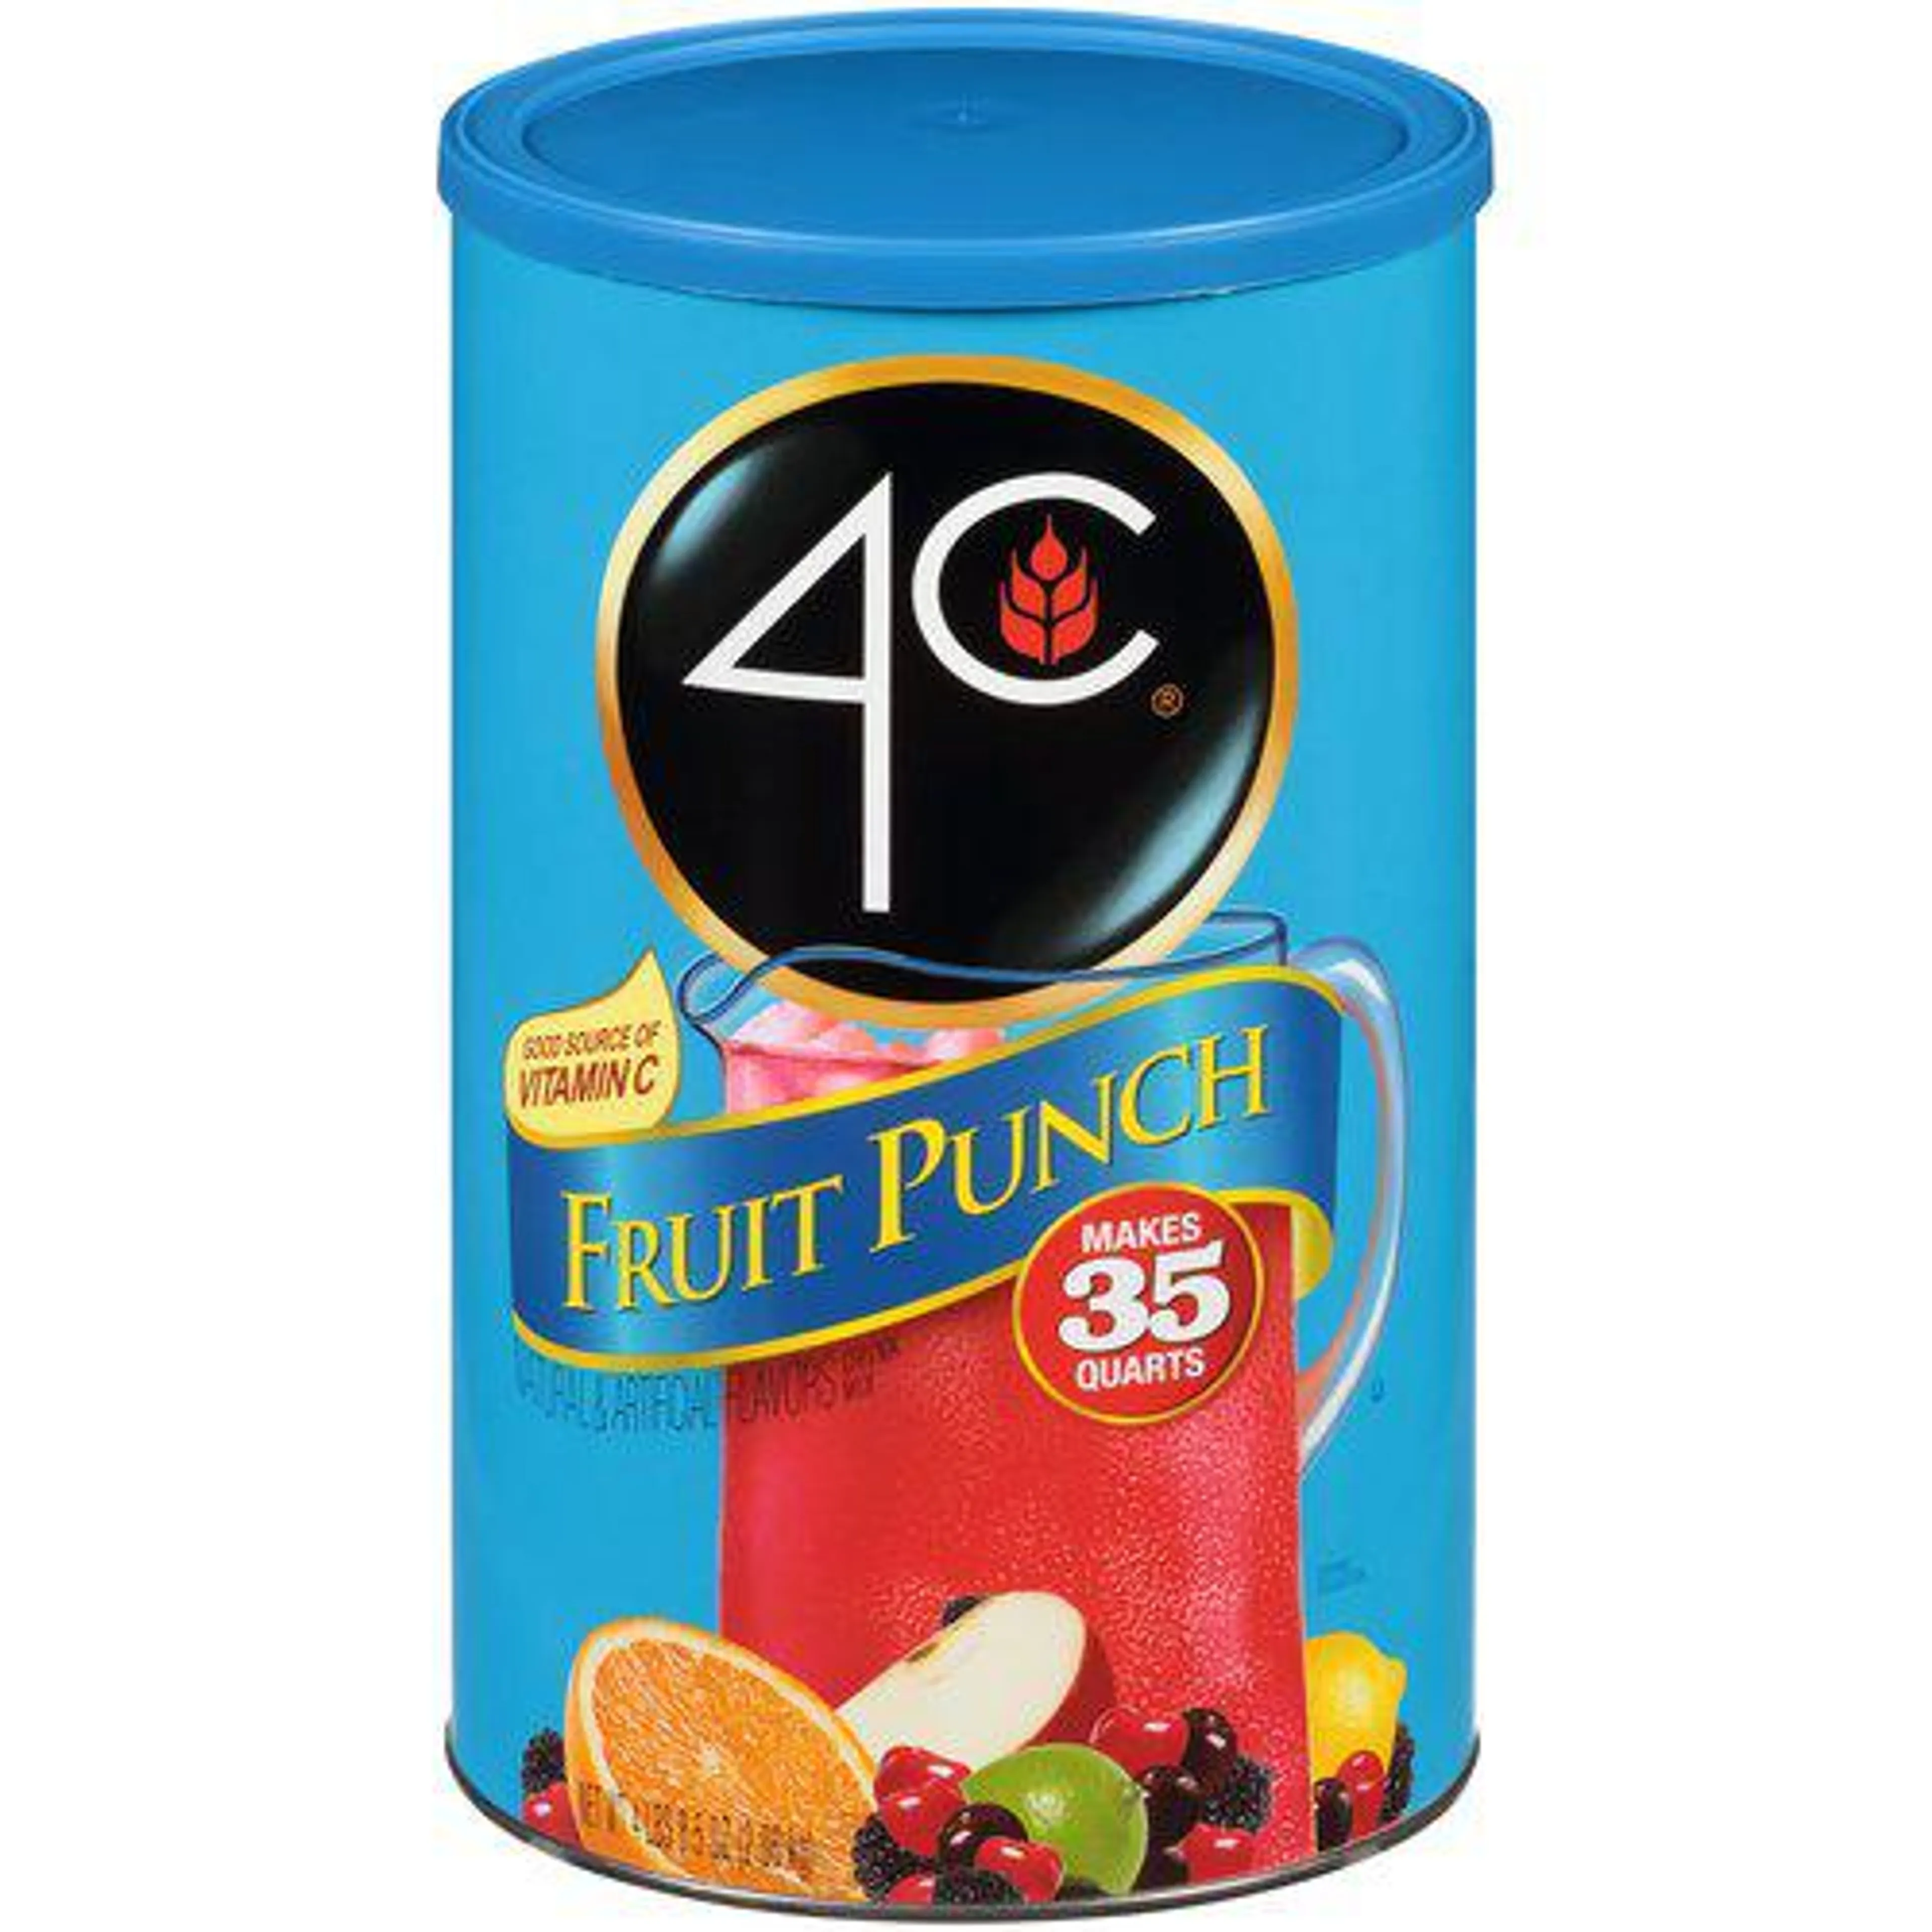 4C Fruit Punch Drink Mix, 35 Quarts, 72.5 Ounce